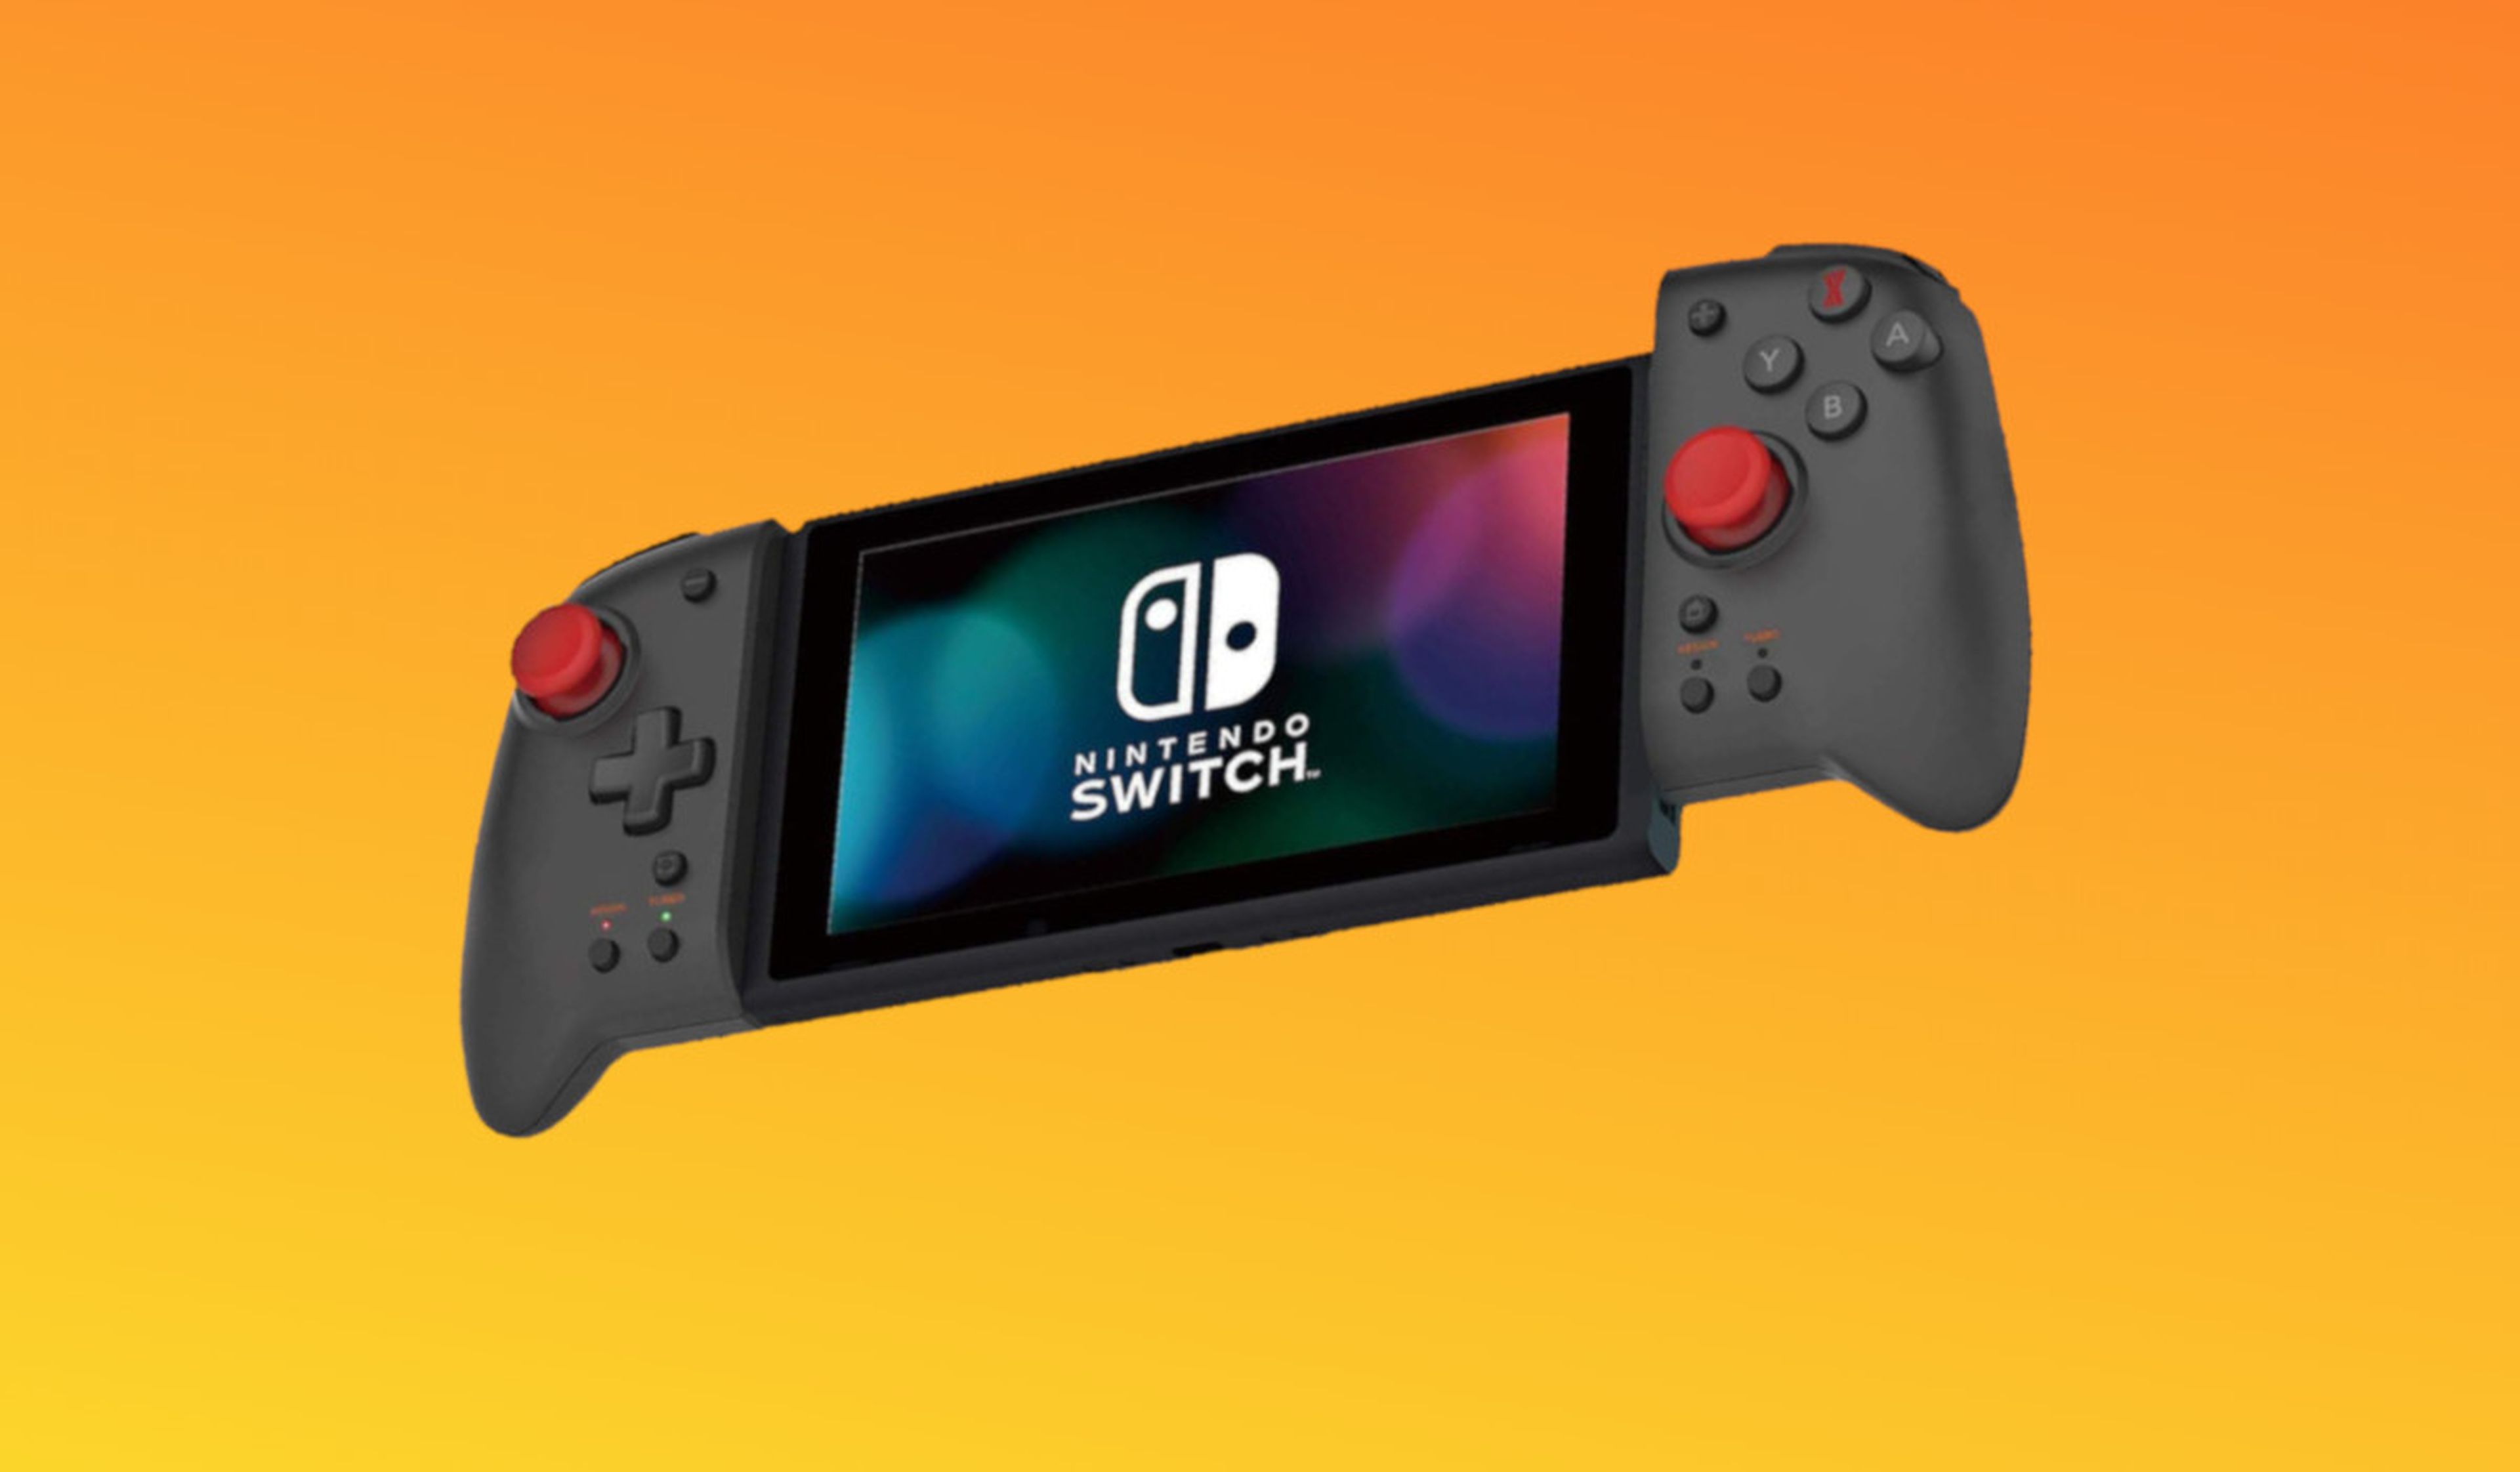 5 alternativas baratas a los Joy-Con de Nintendo Switch